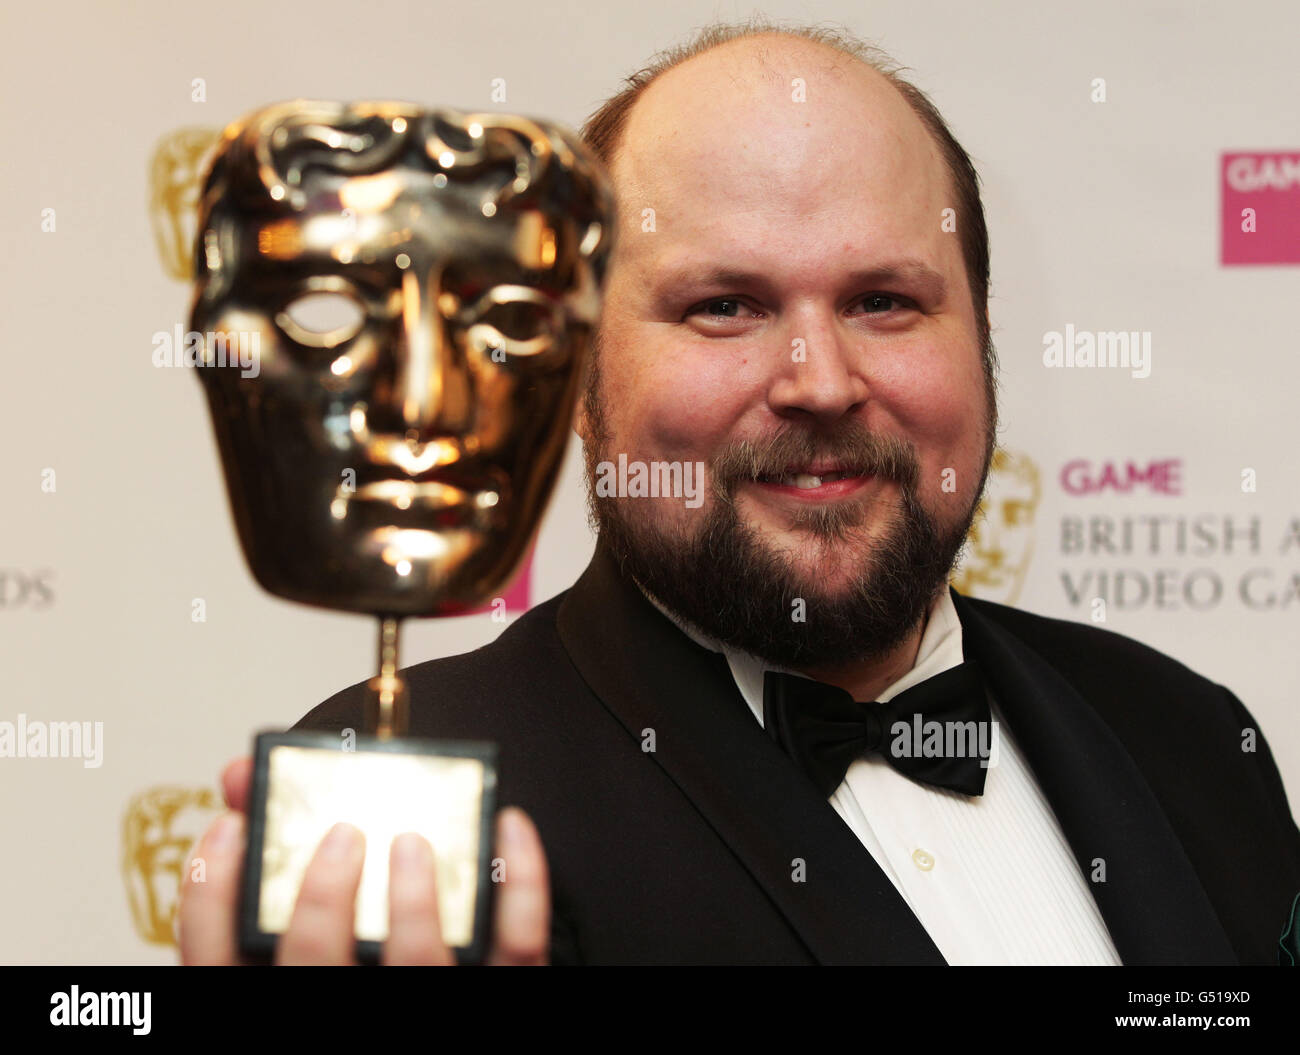 Programmeur et créateur suédois de Minecraft Markus Persson avec son prix spécial au JEU British Academy Video Games Awards au London Hilton, Londres. Banque D'Images